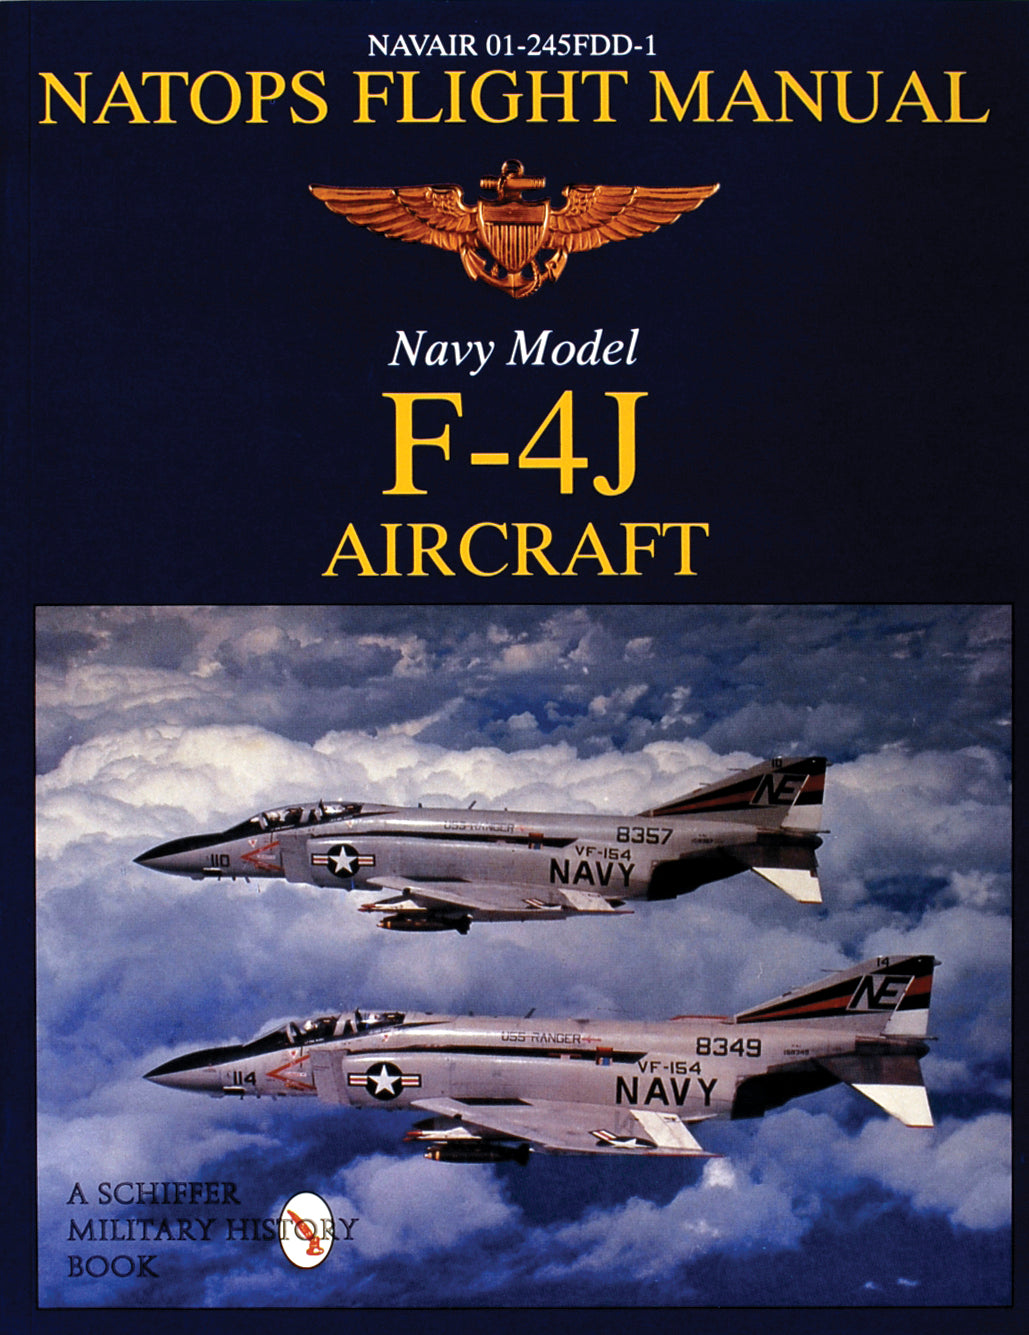 NATOPS Flight Manual F-4J